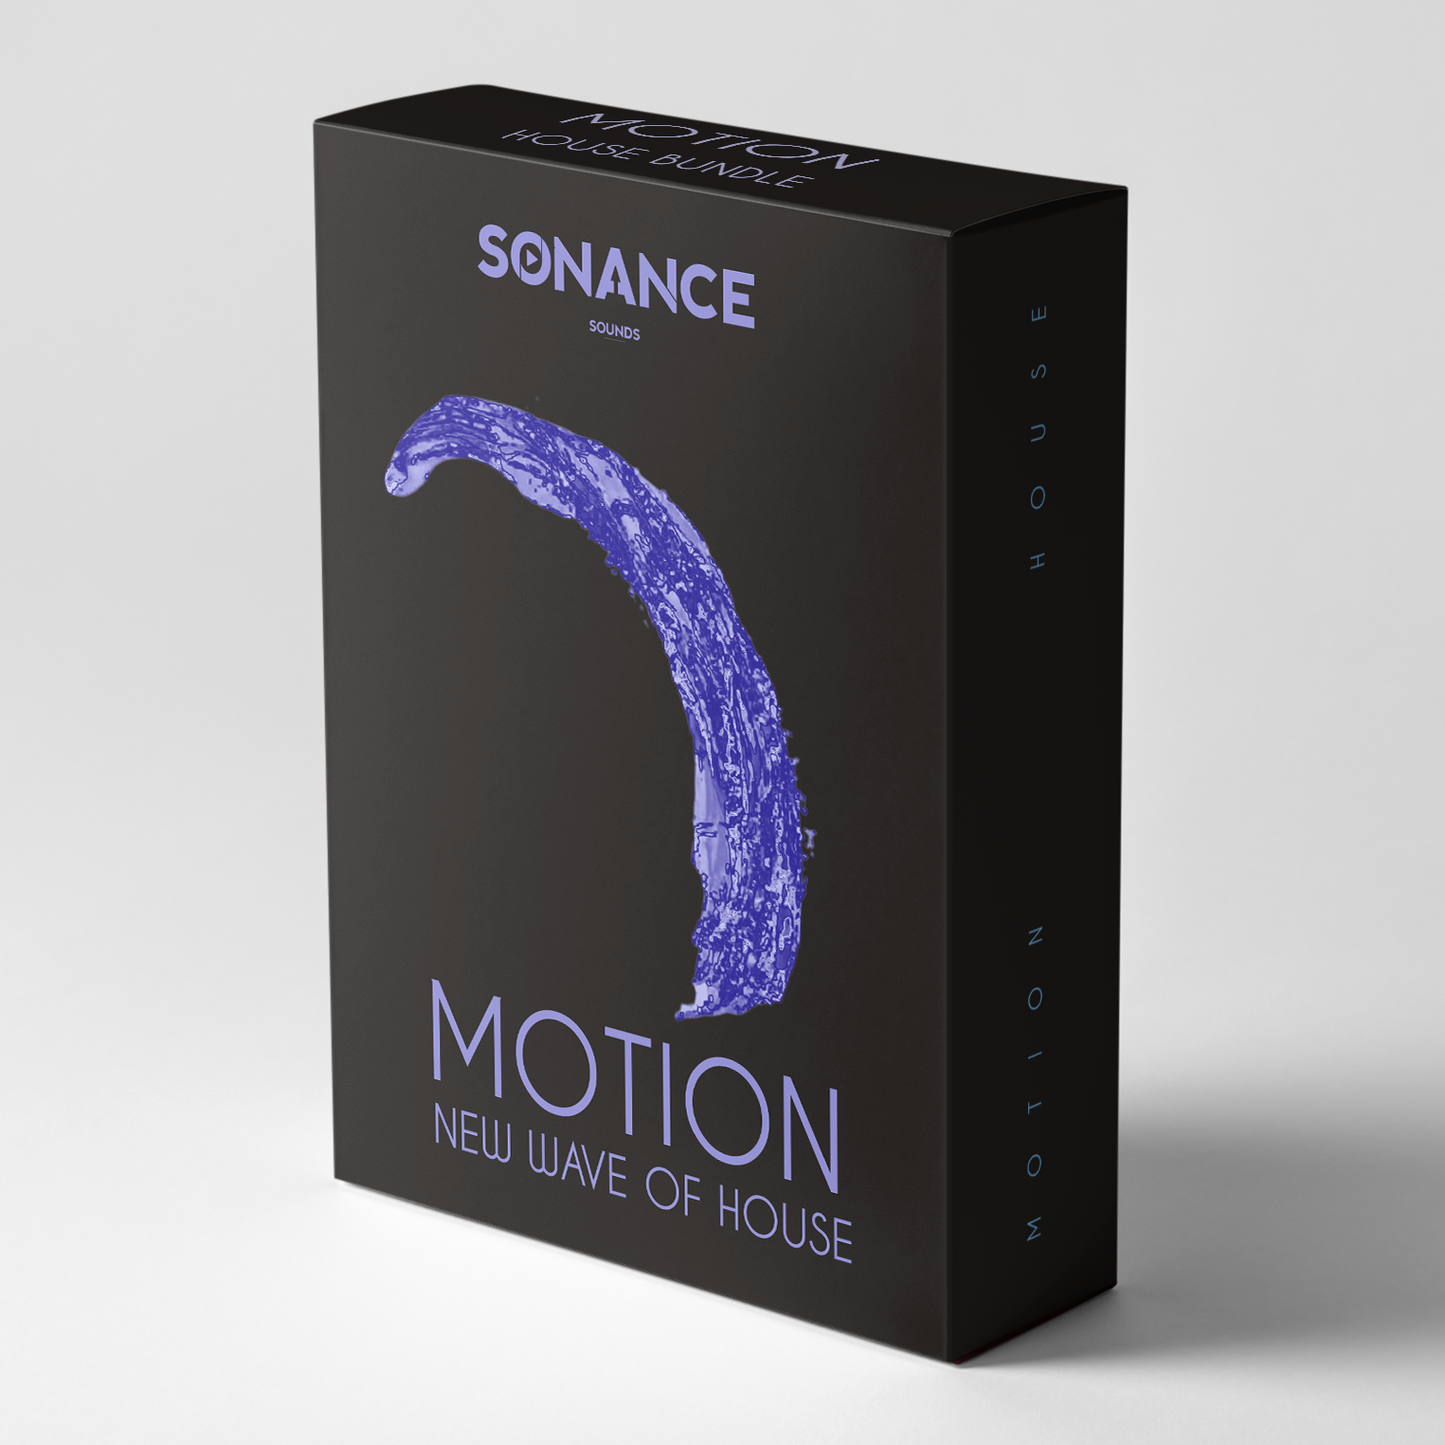 Sonance Sounds - Motion